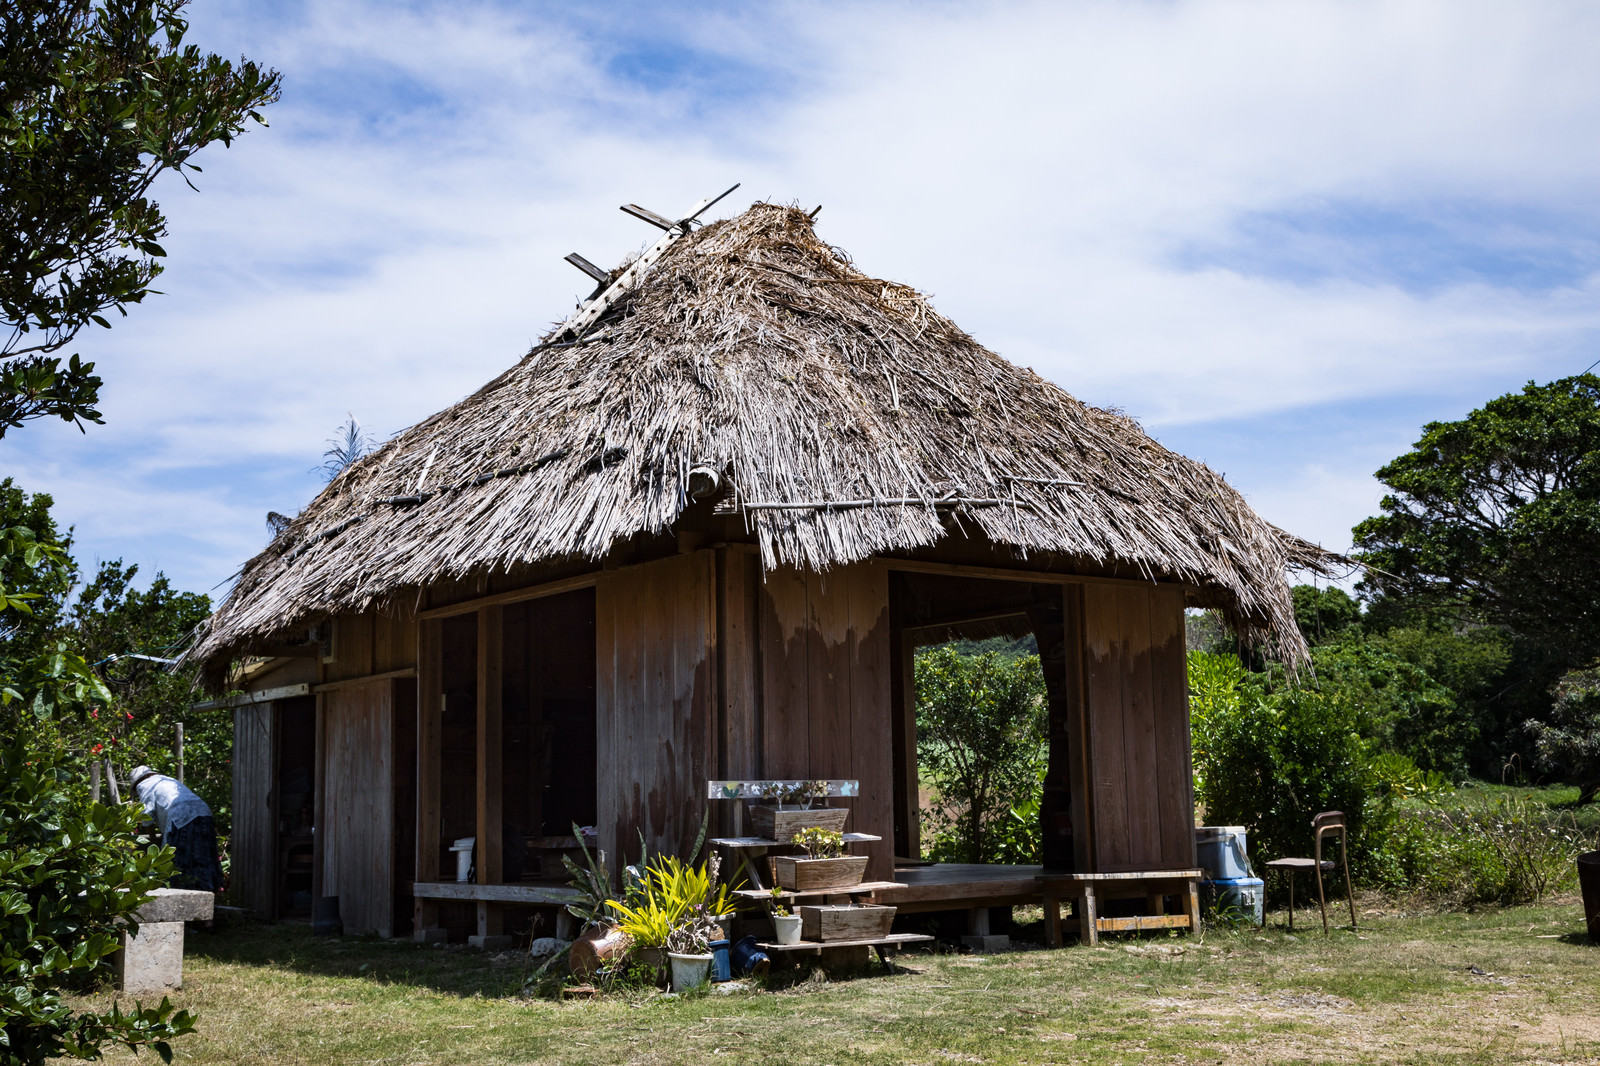 「徳之島の茅葺屋根民家「あずまや」 | 写真の無料素材・フリー素材 - ぱくたそ」の写真